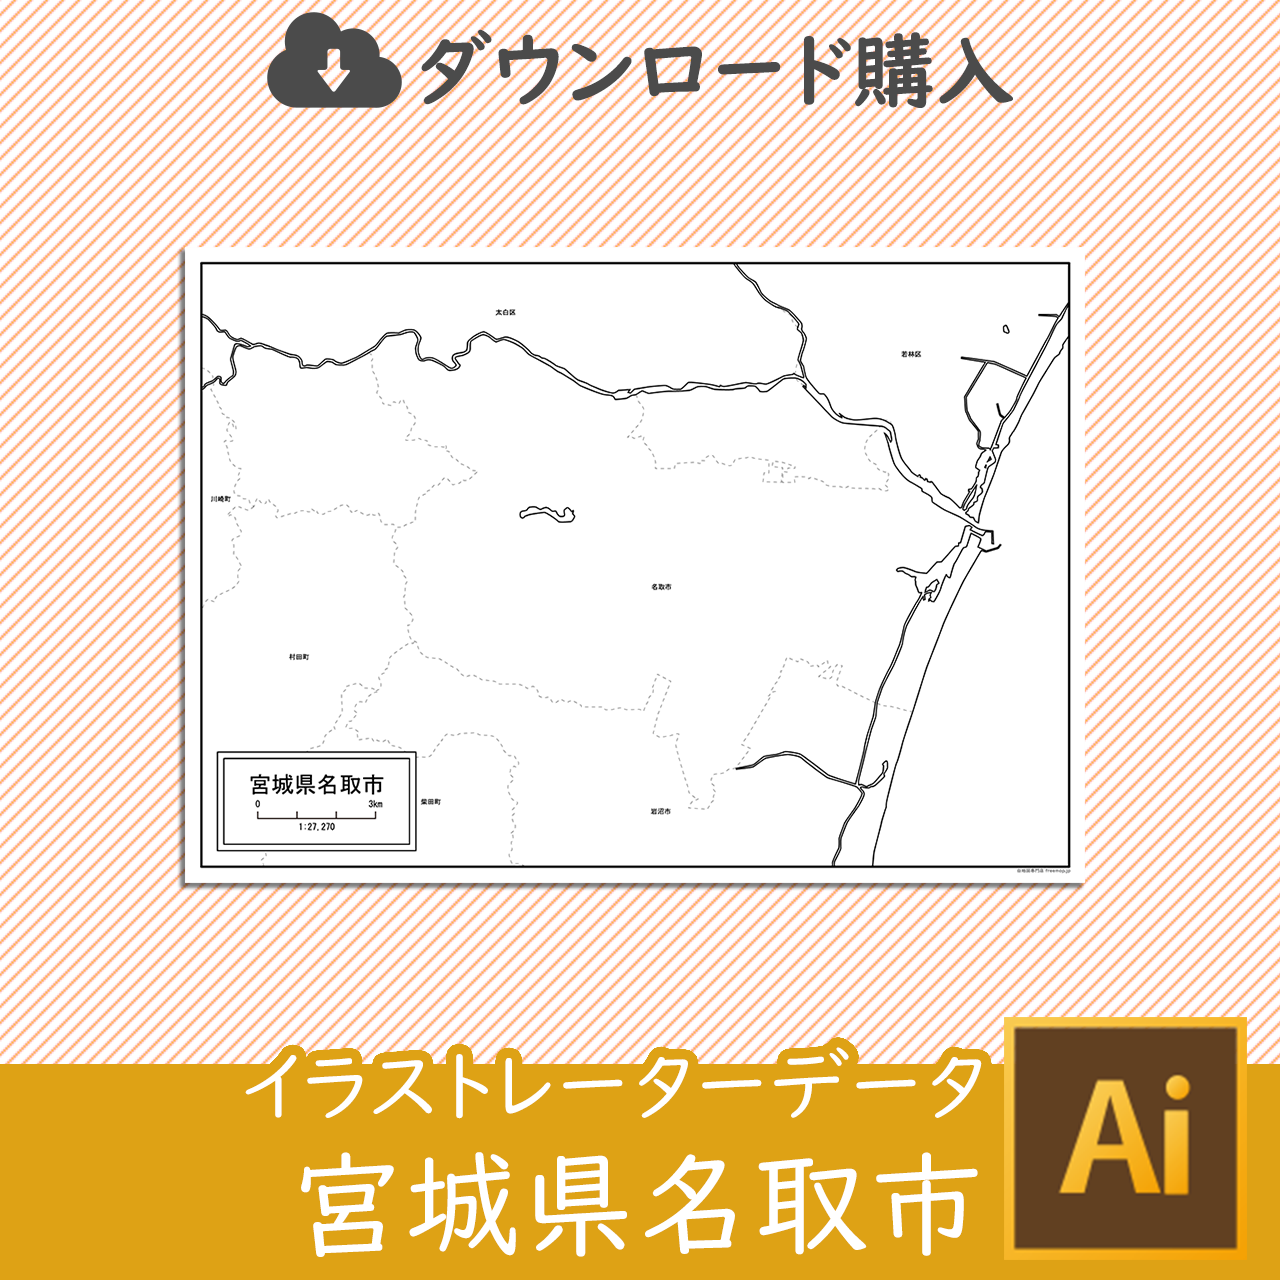 名取市のaiデータのサムネイル画像